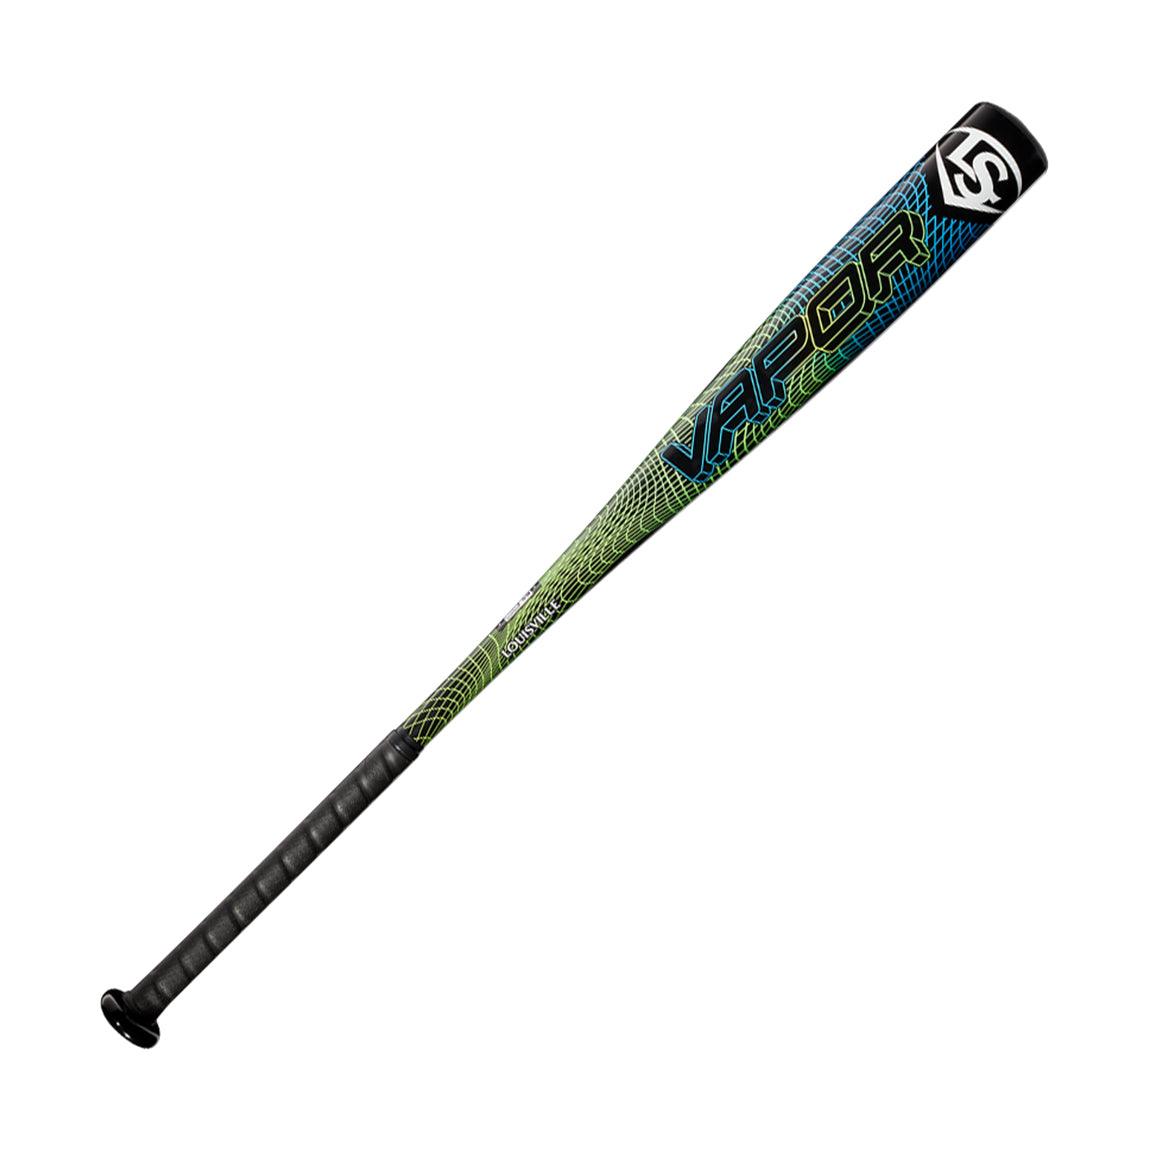 Vapor (-3) 2 5/8" BBCOR Baseball Bat - Sports Excellence